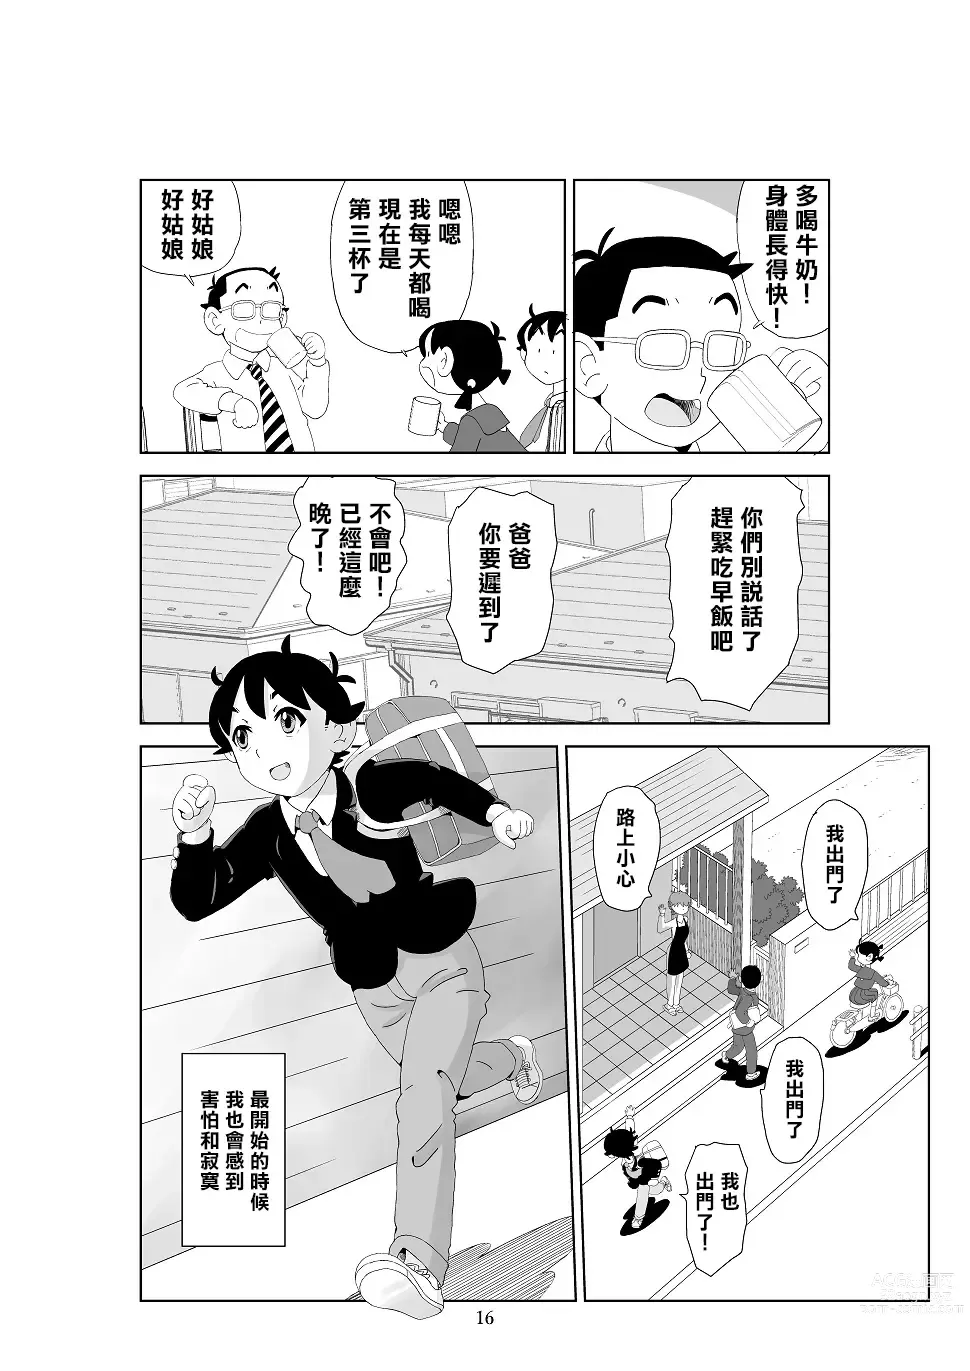 Page 18 of doujinshi Futoshi 3